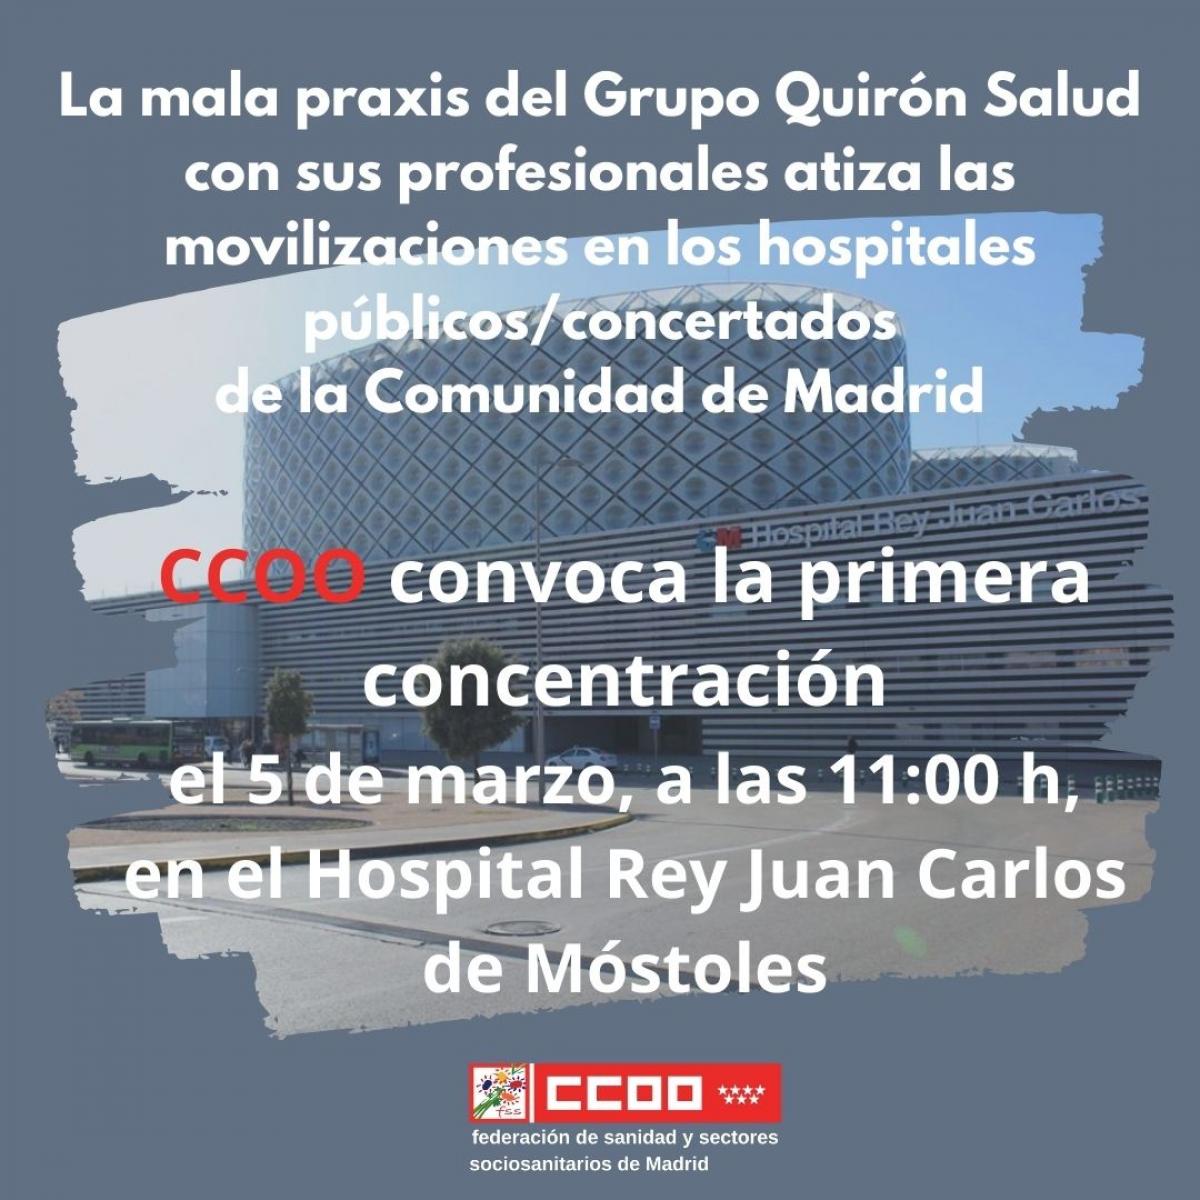 CCOO anuncia movilizaciones en Quirón Salud